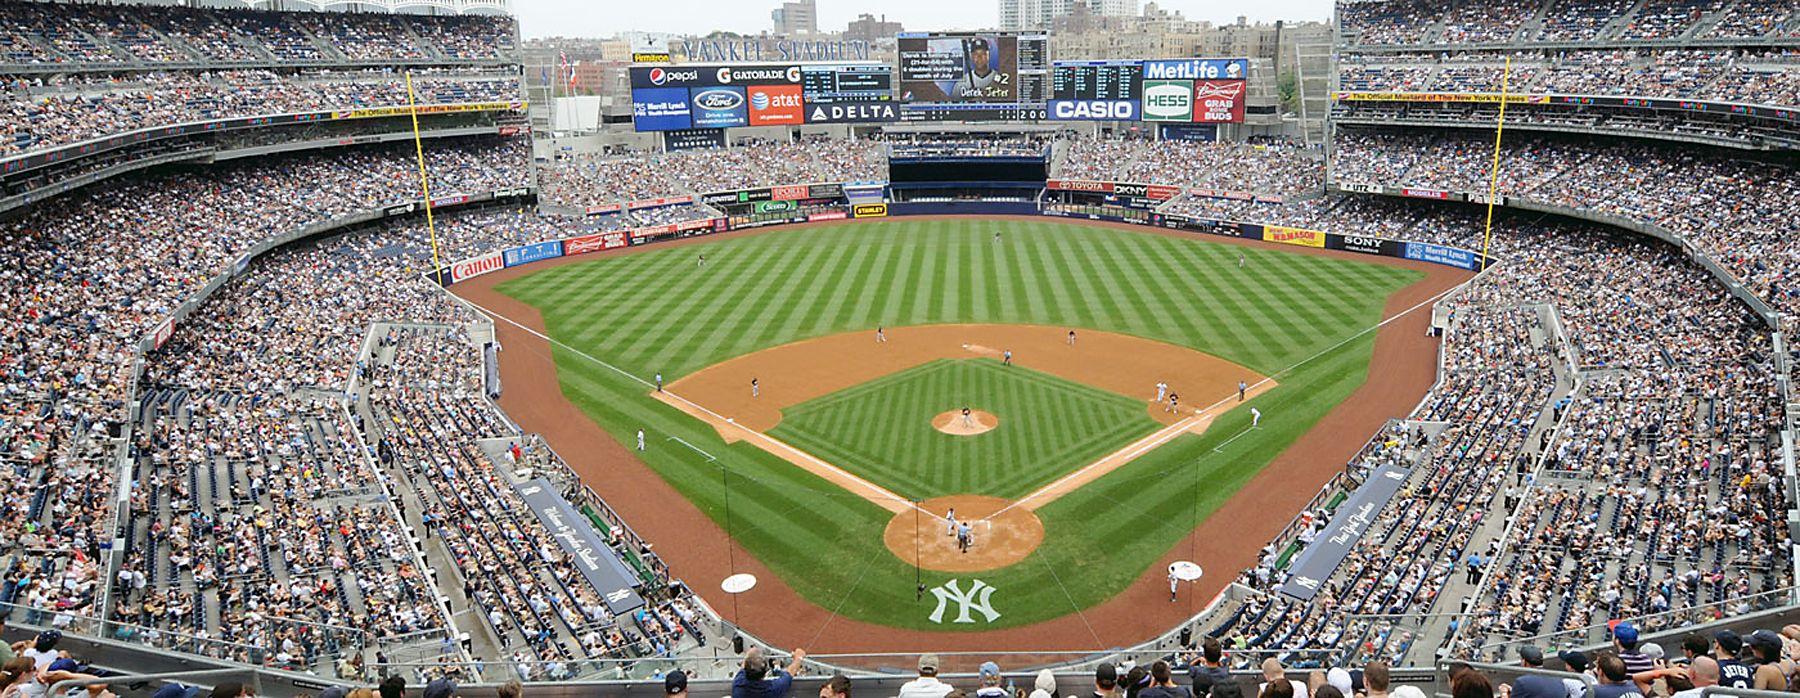 Mlb American League Background. Yankee Stadium Panorama